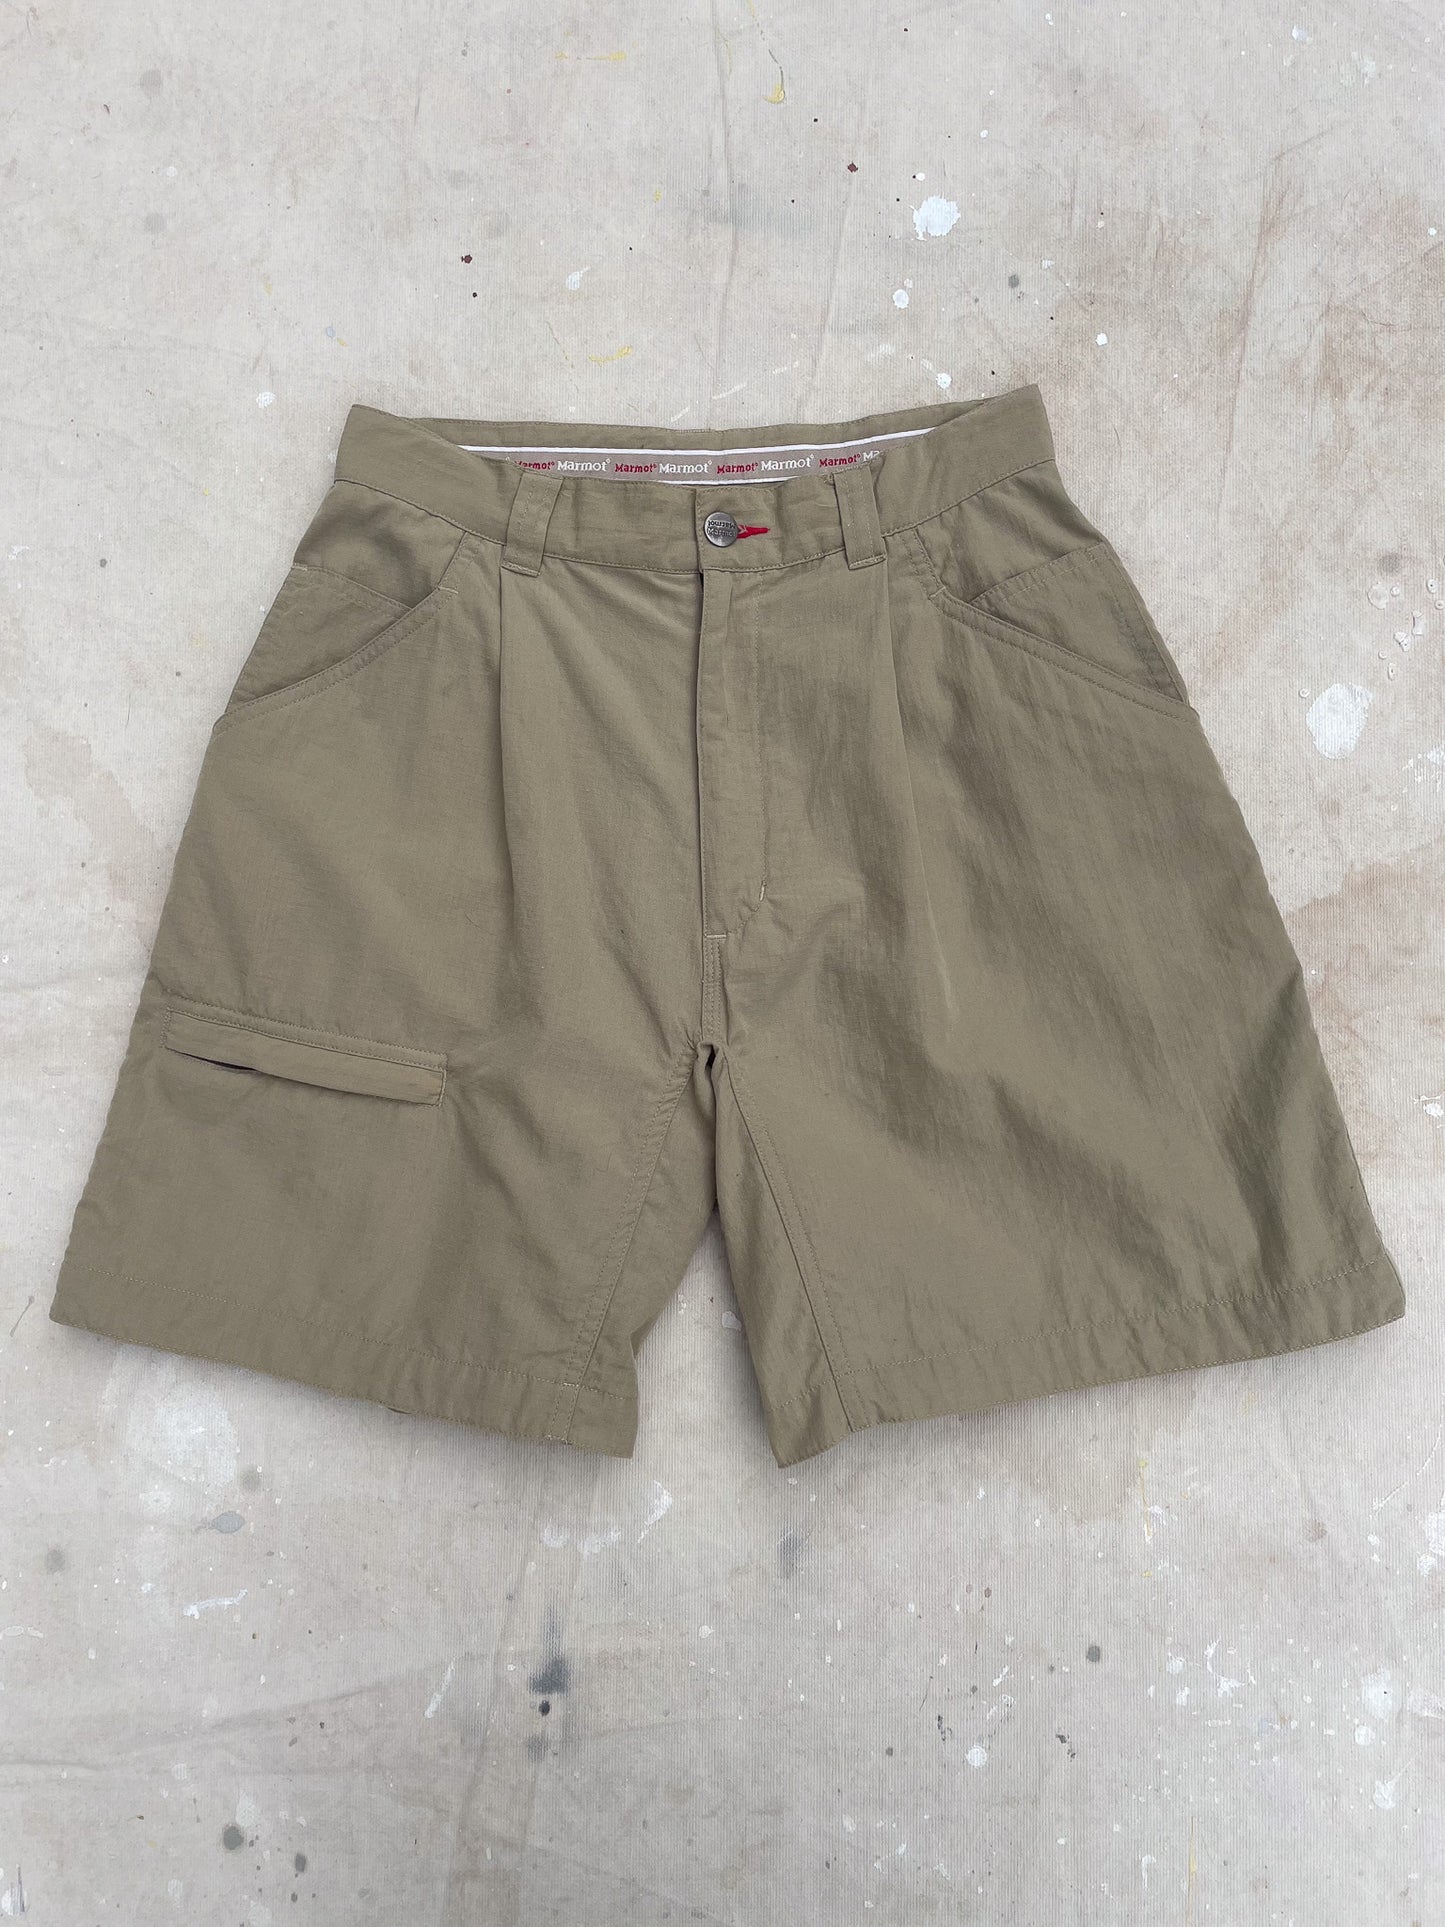 Marmot Cordura Shorts—[26]